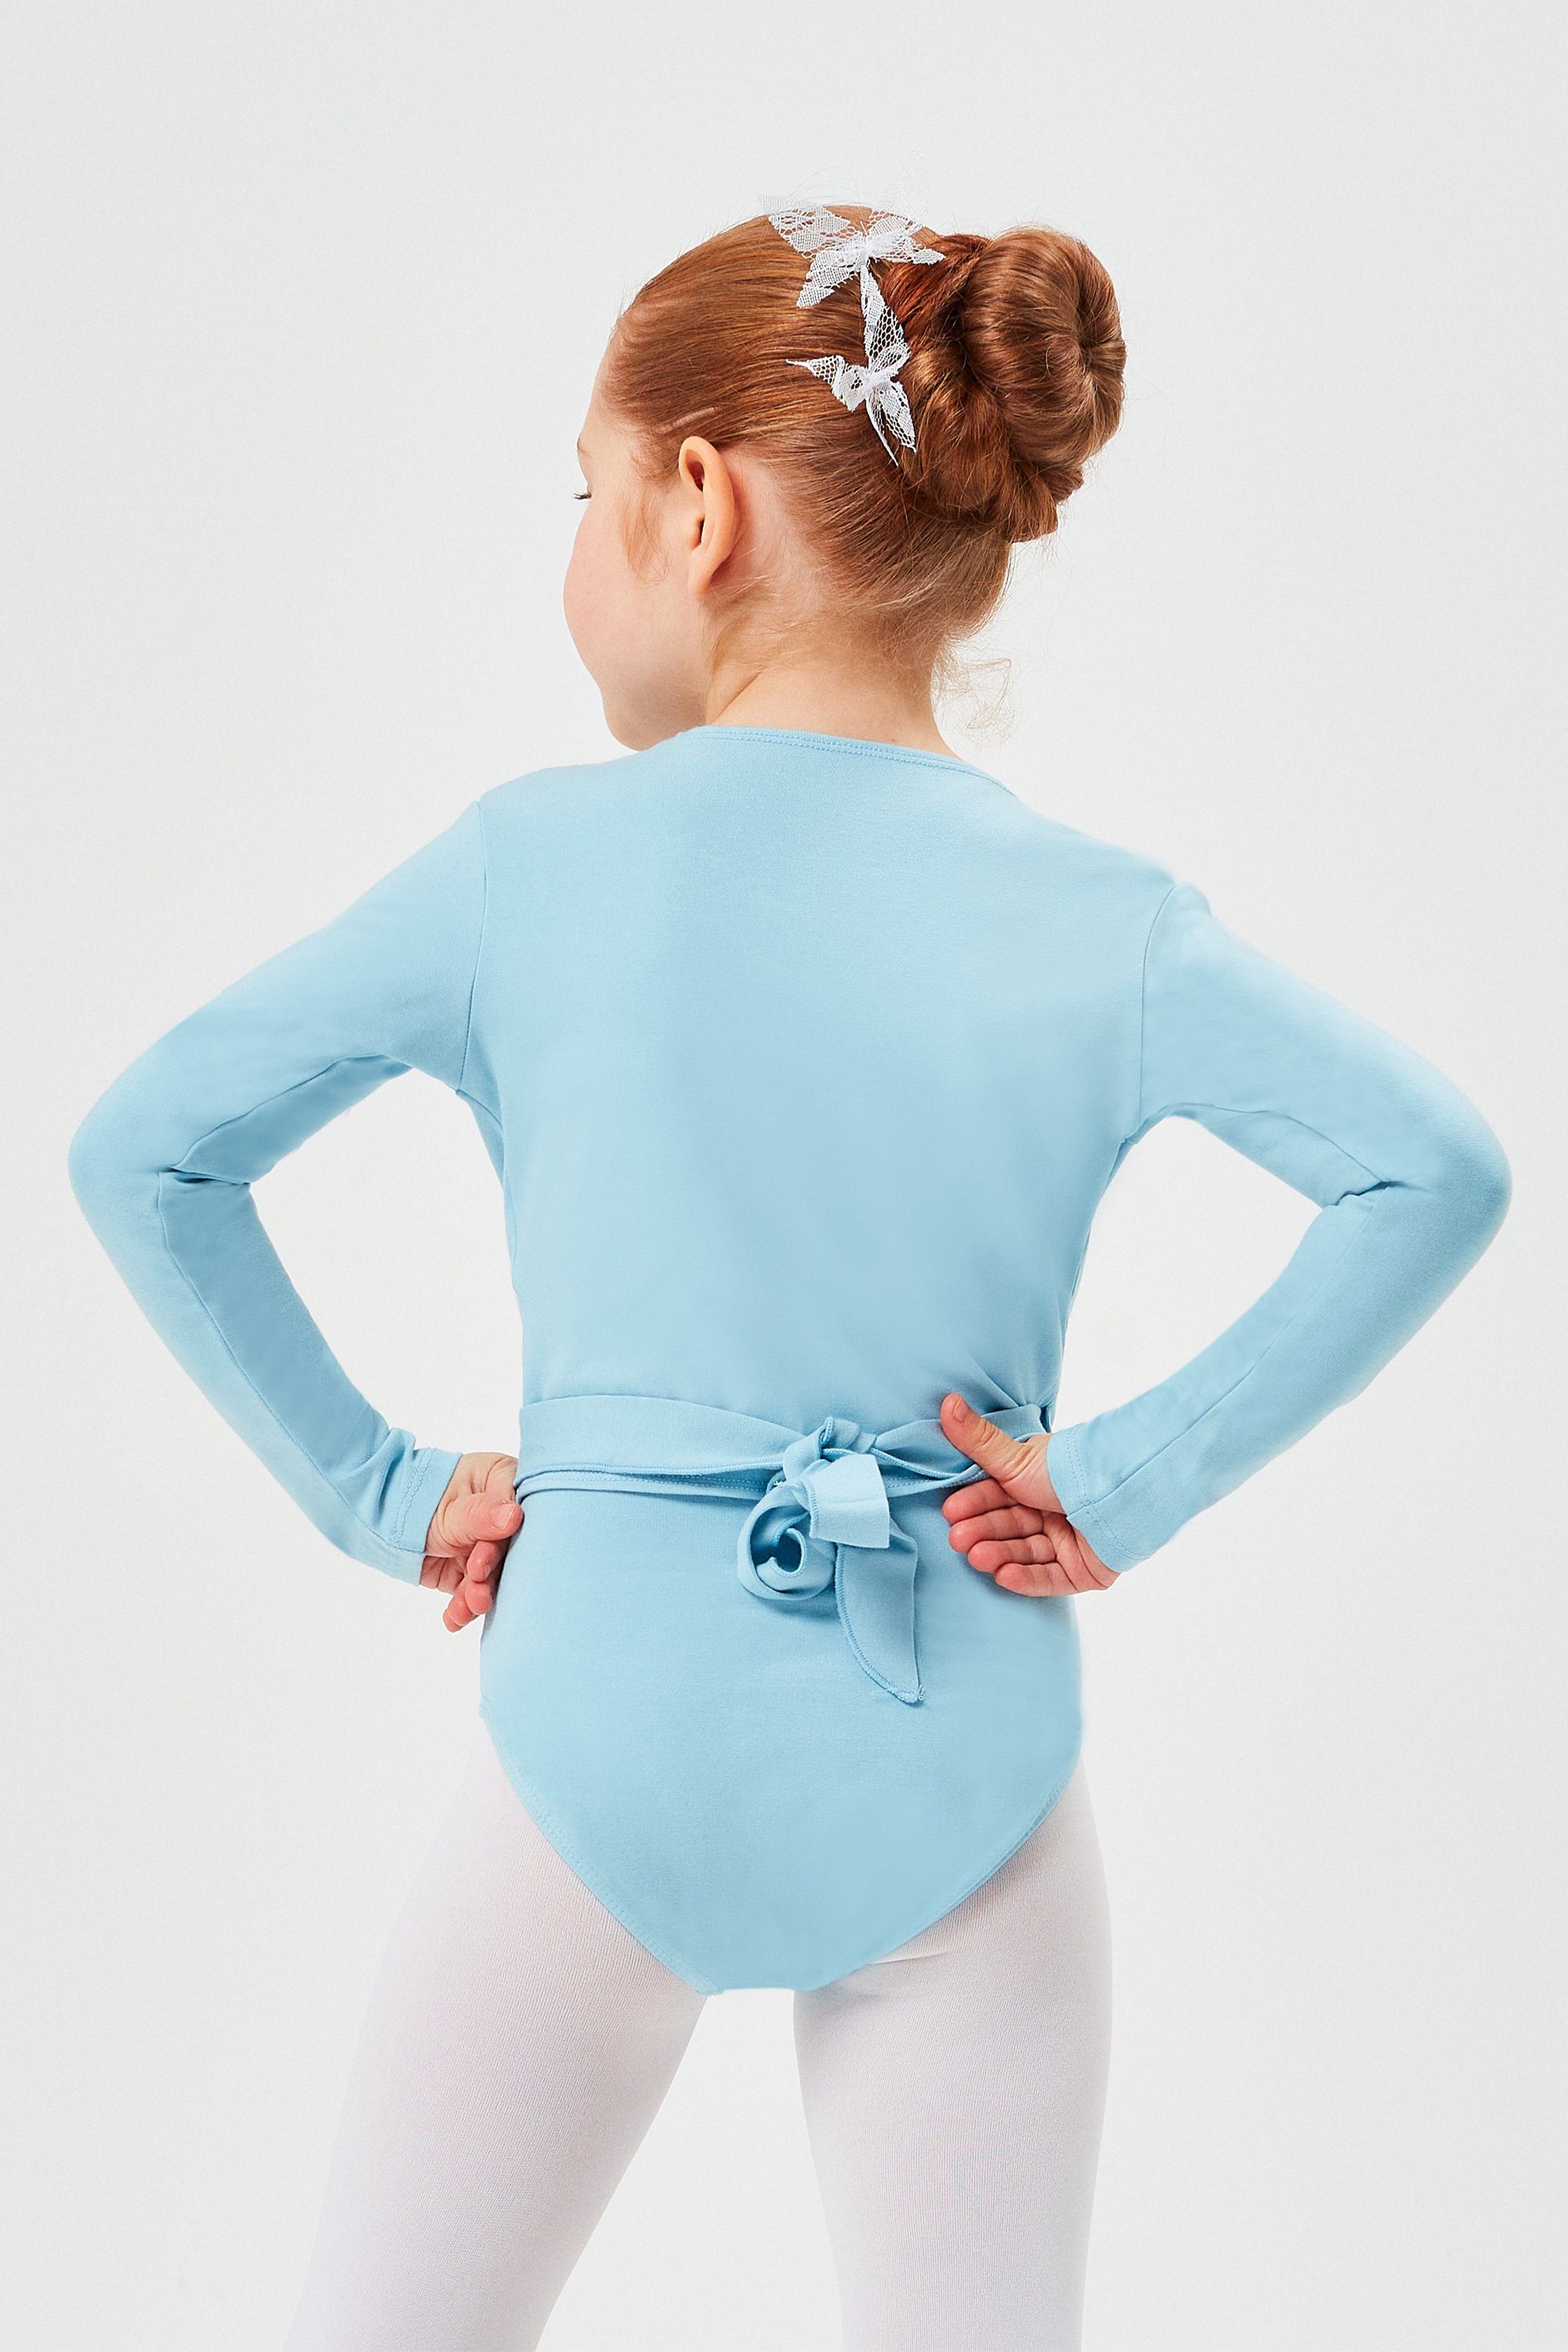 Sweatjacke Ballett Mädchen hellblau aus Mandy Wickelacke tanzmuster weicher Ballettjacke für Baumwolle